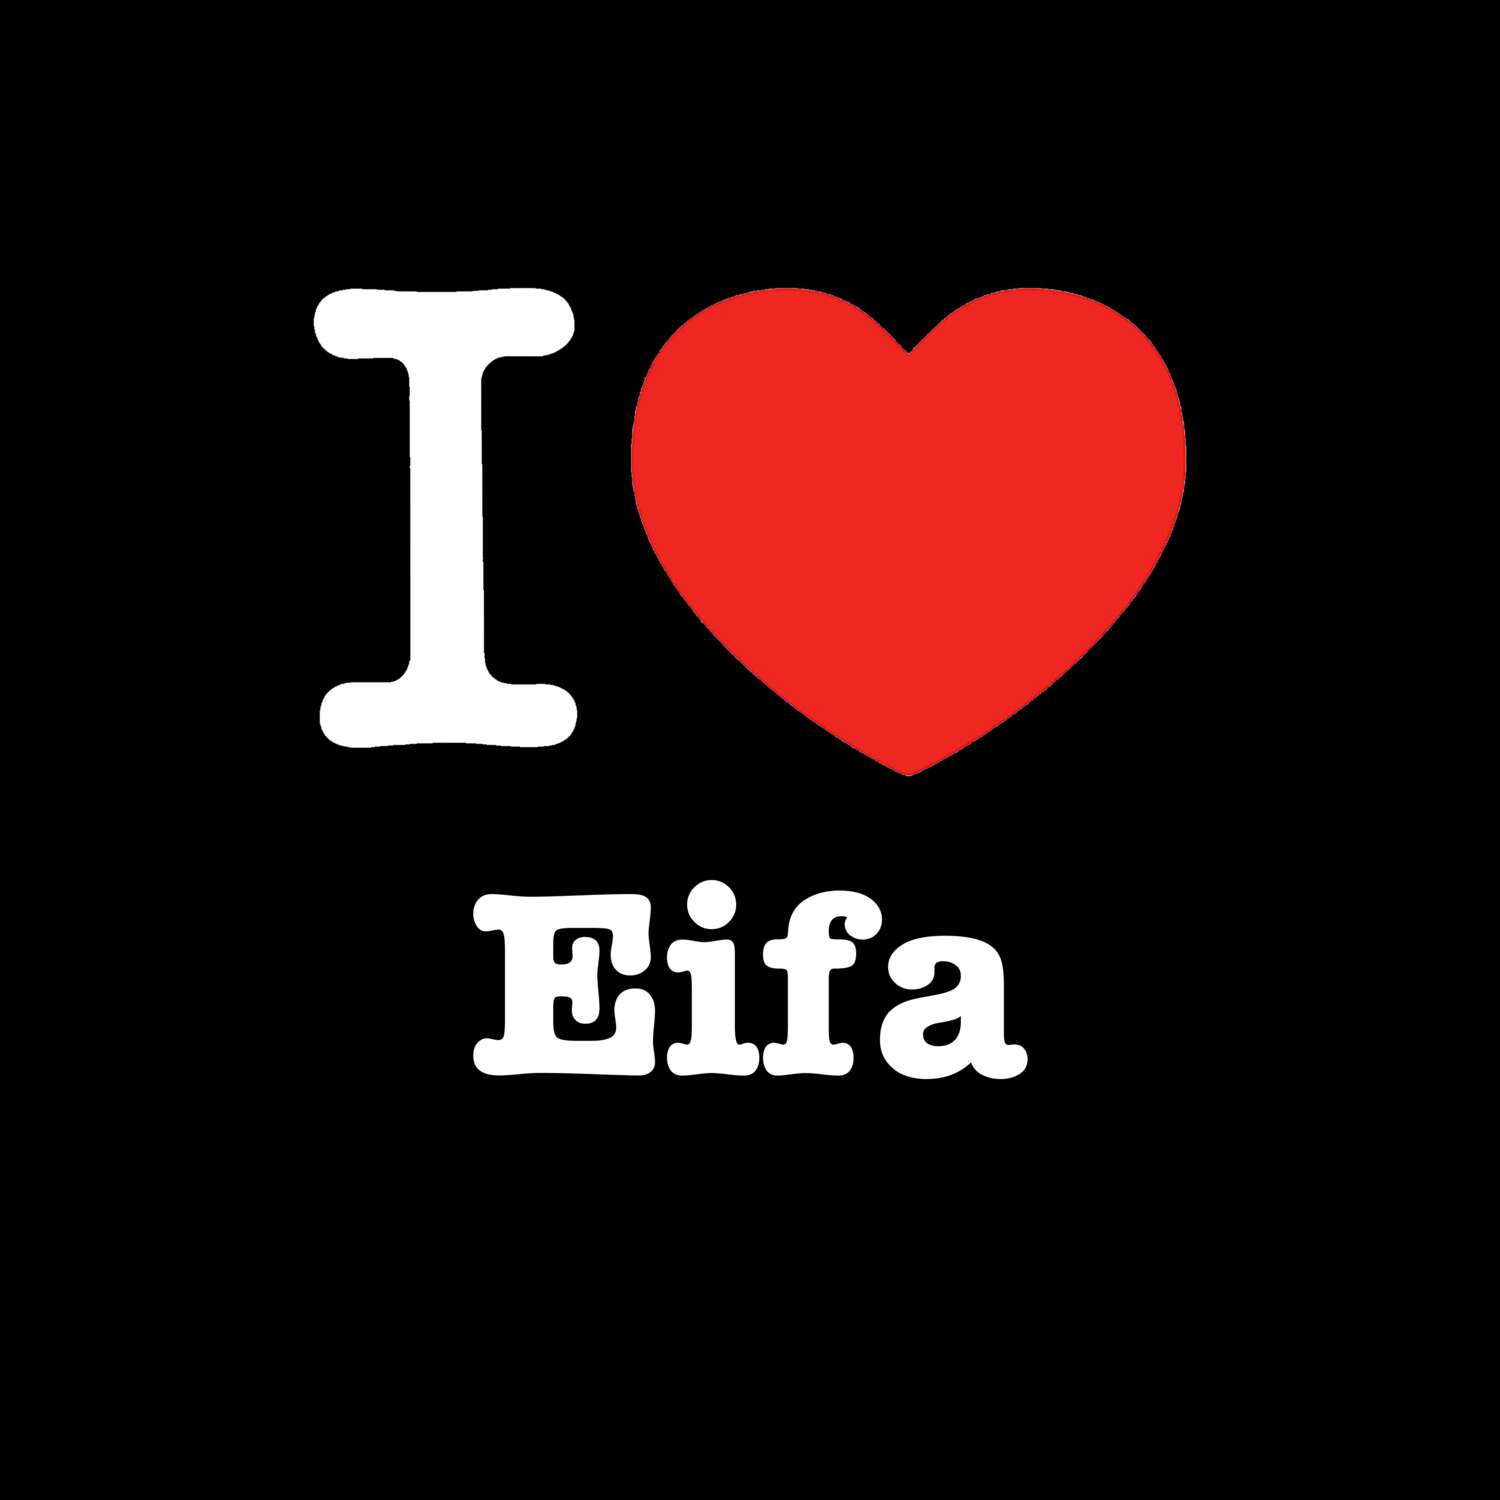 Eifa T-Shirt »I love«